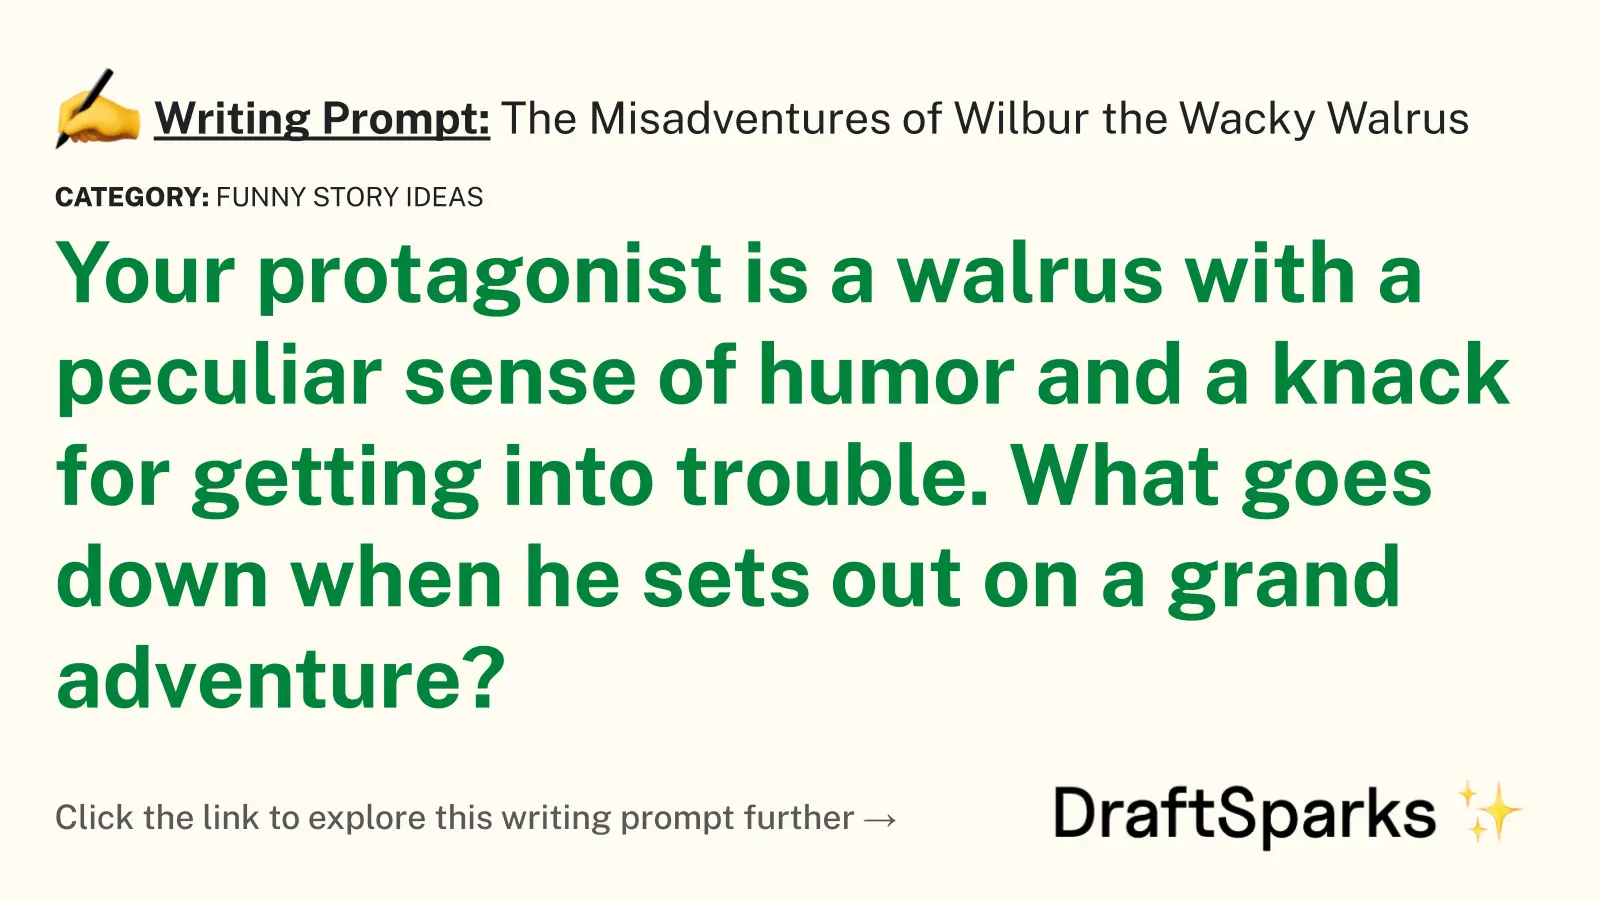 The Misadventures of Wilbur the Wacky Walrus